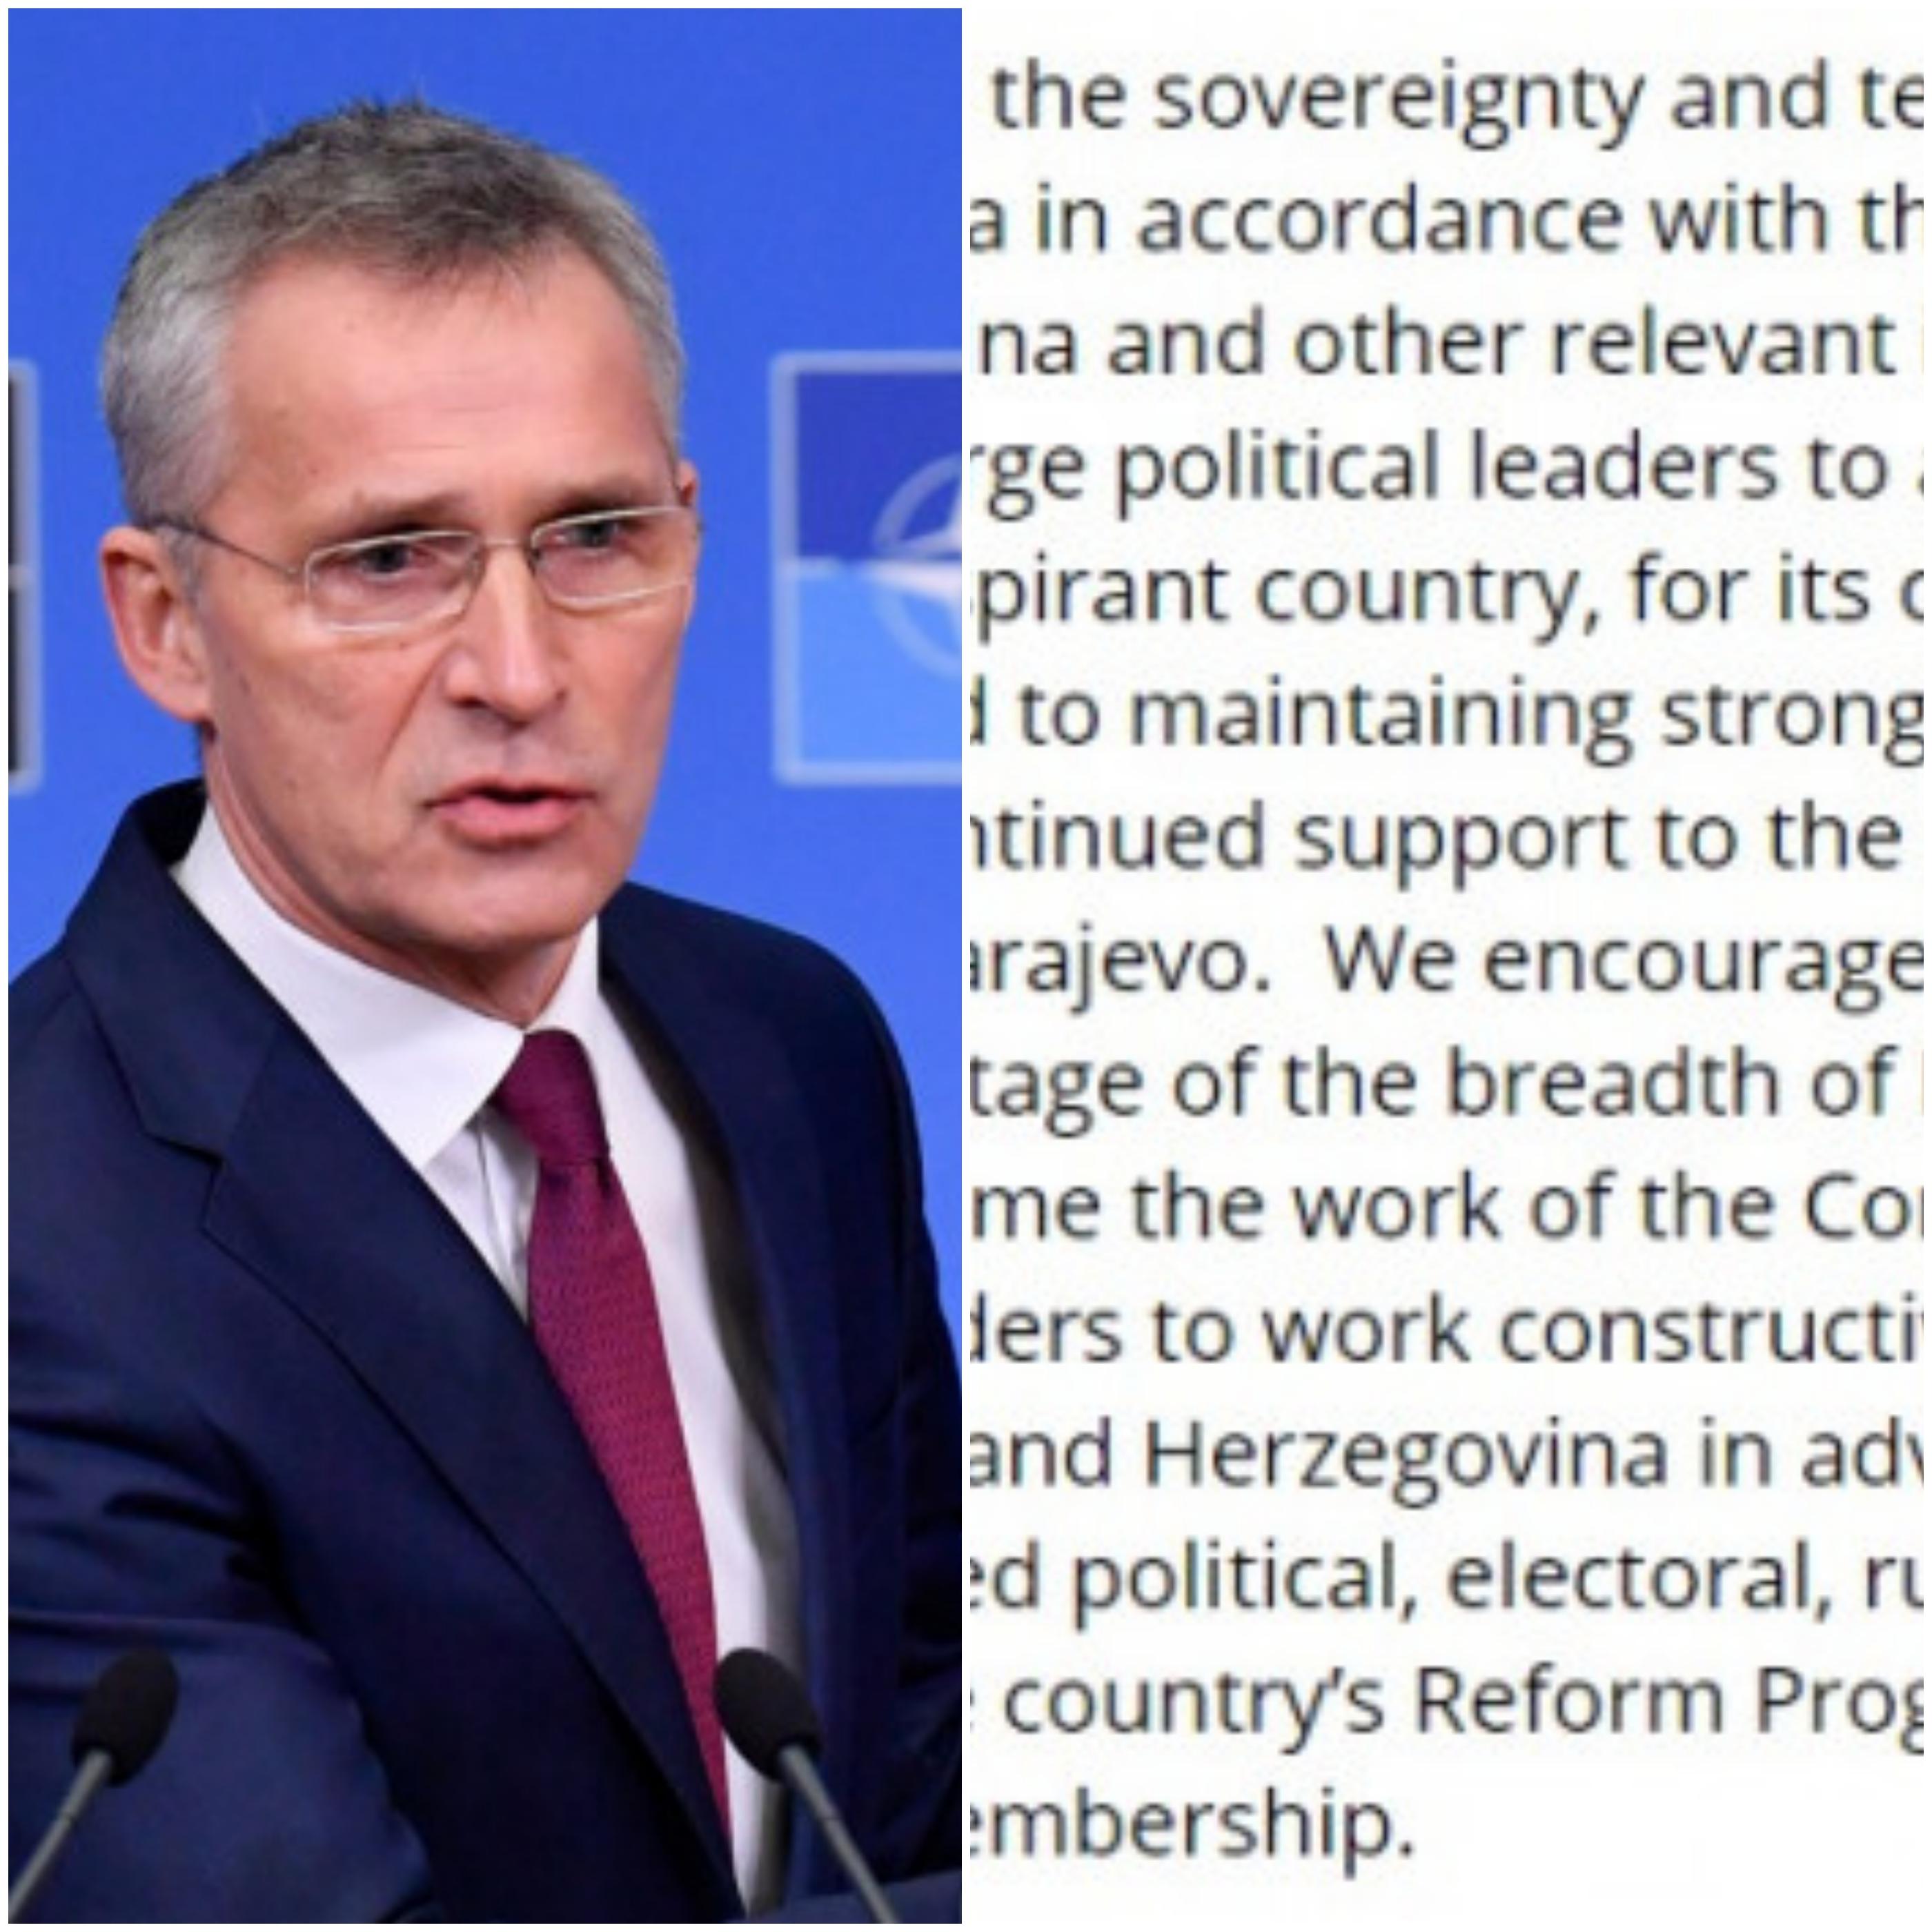 Alijansa pohvaljuje Bosnu i Hercegovinu, državu koja teži članstvu, za njen doprinos operacijama pod vodstvom NATO-a - Avaz